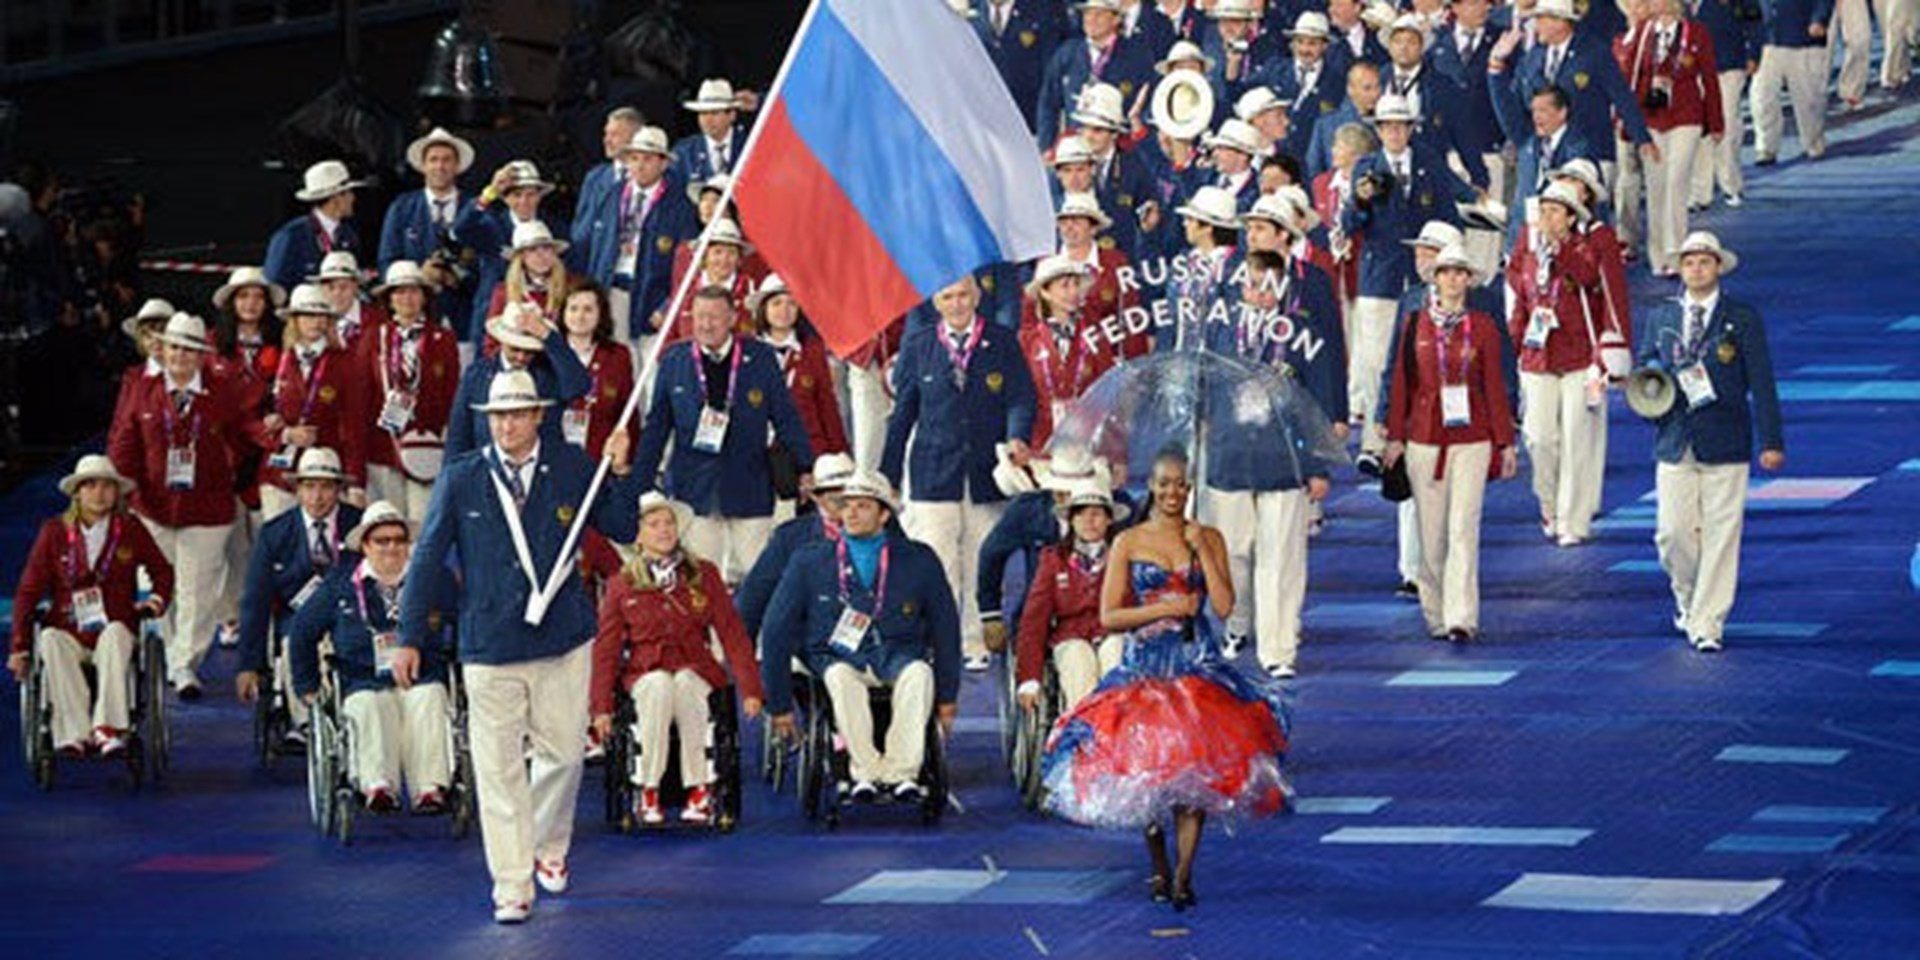 Восстановить справедливость и допустить сборную России к Паралимпиаде в Рио #вопреки